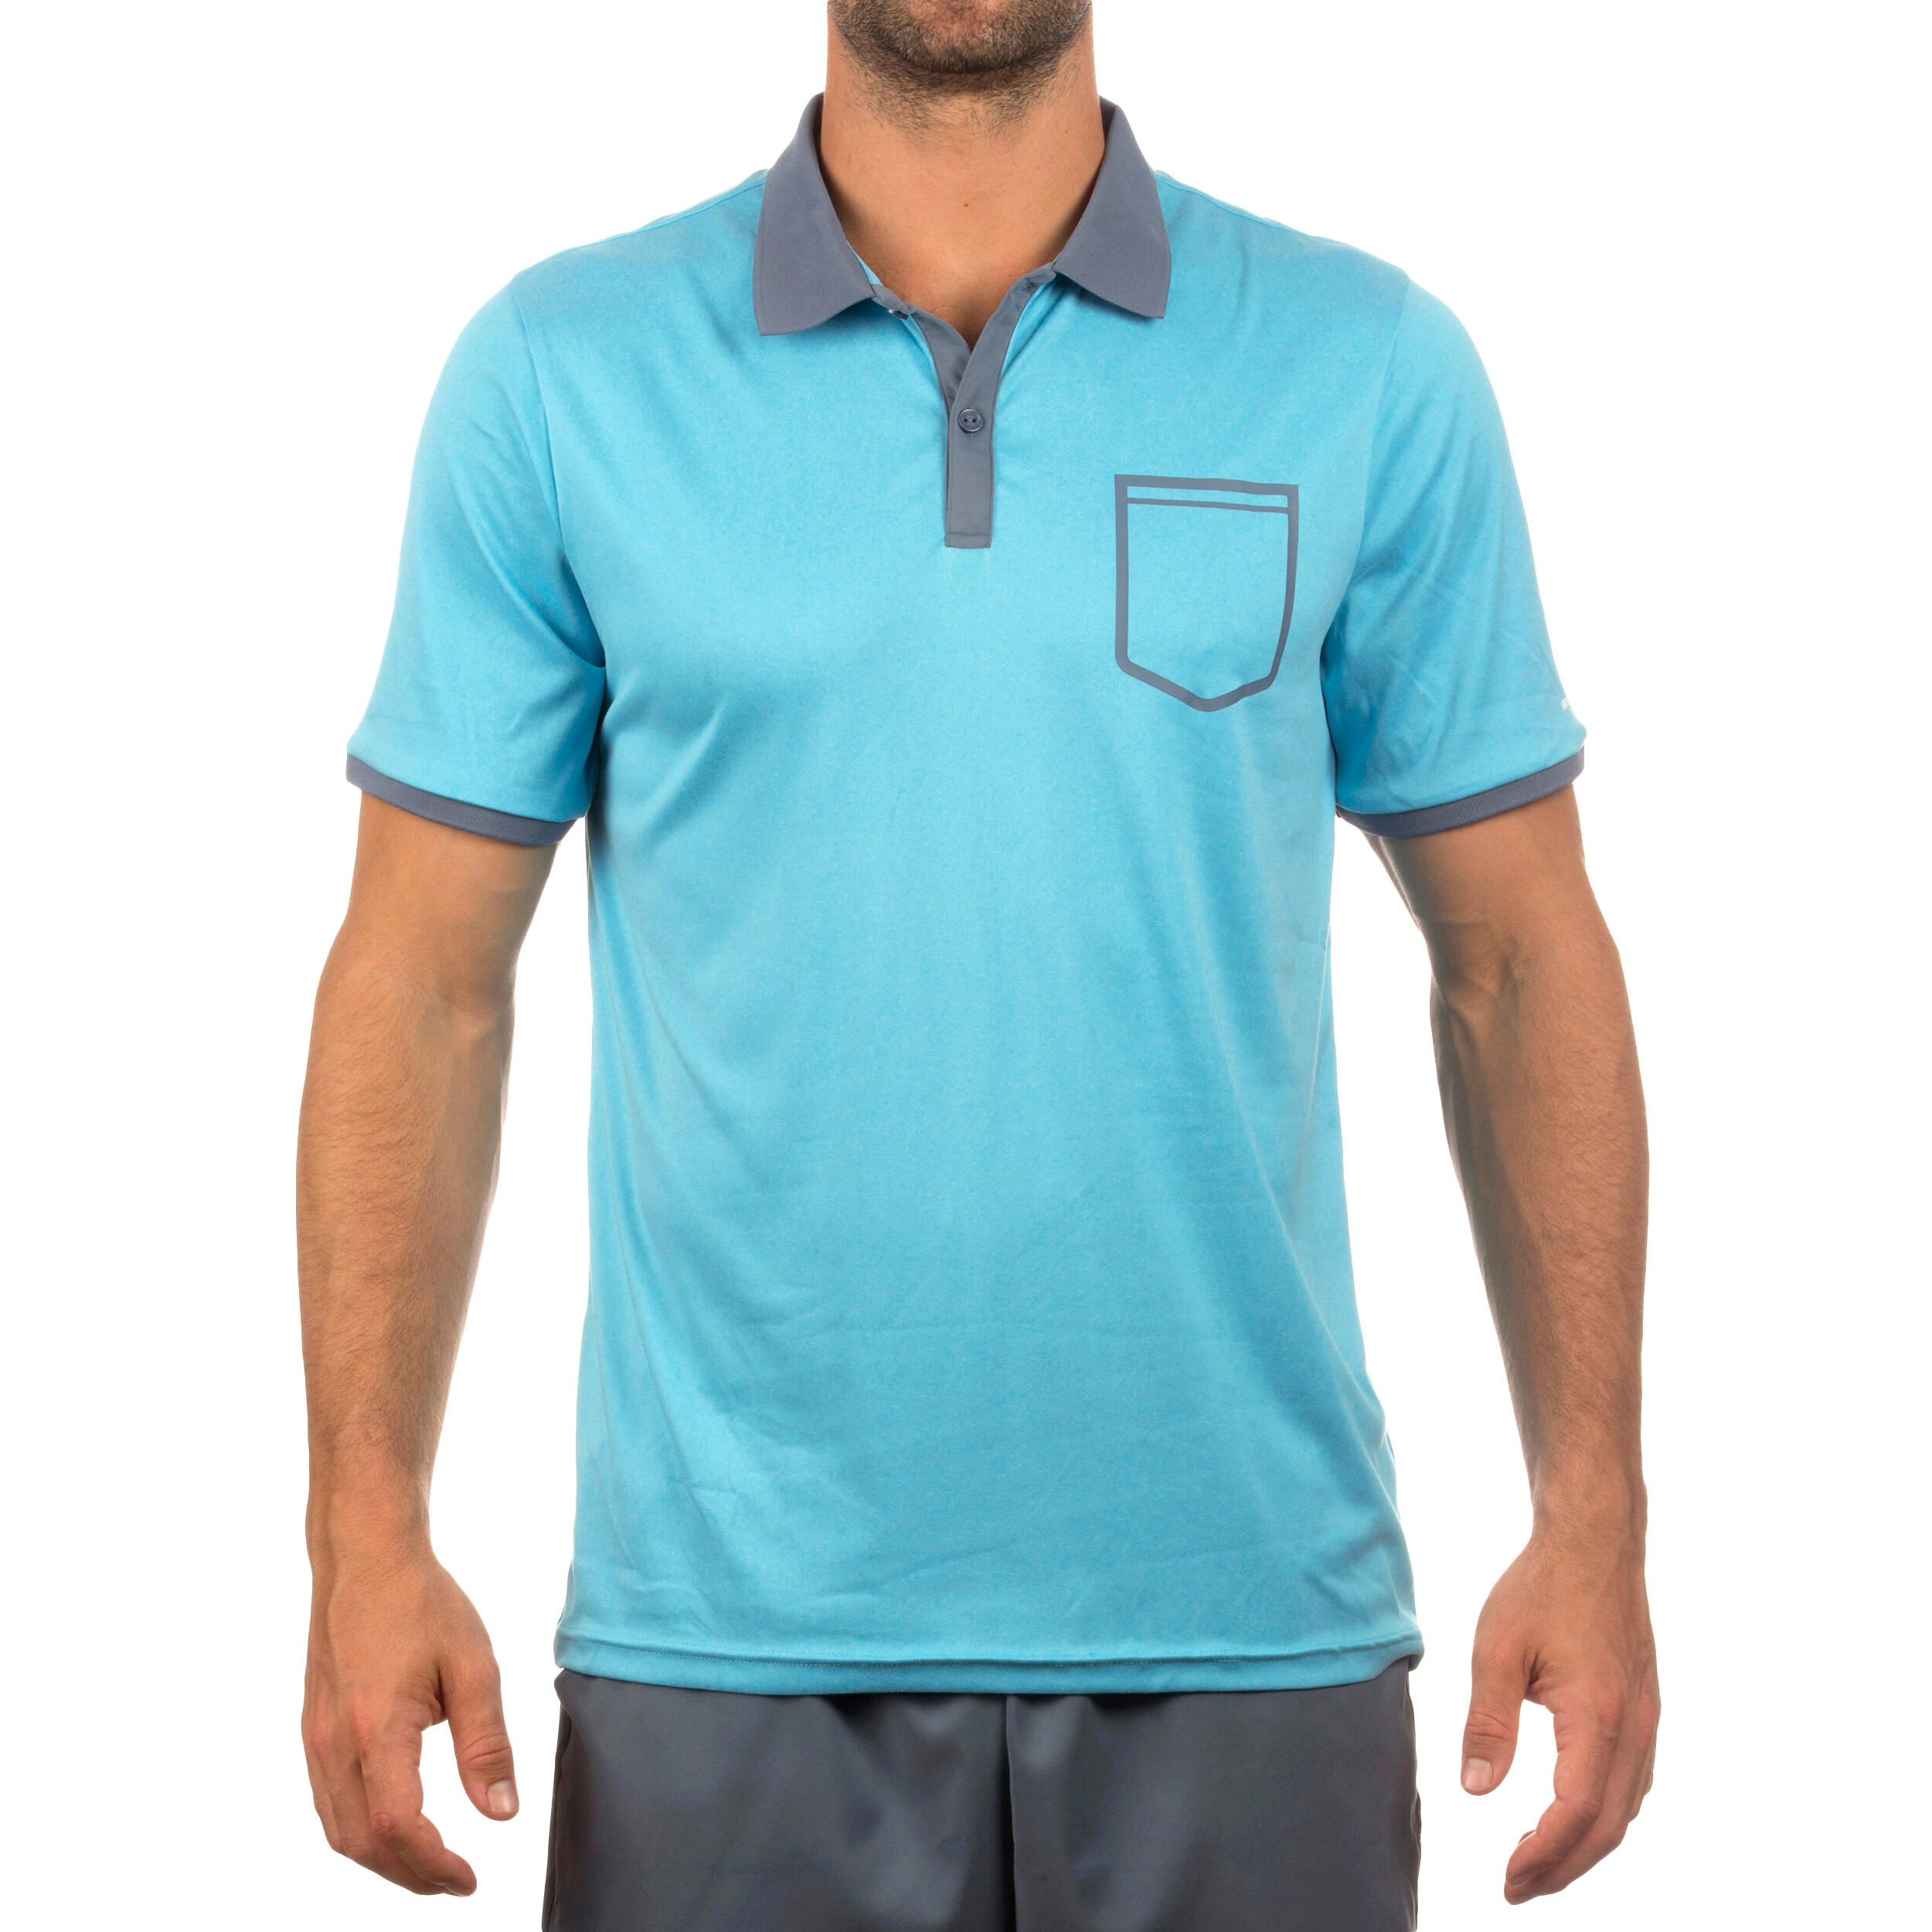 Soft Padel Tennis Badminton Squash Table Tennis Pocket Polo Shirt - Blue 2/6